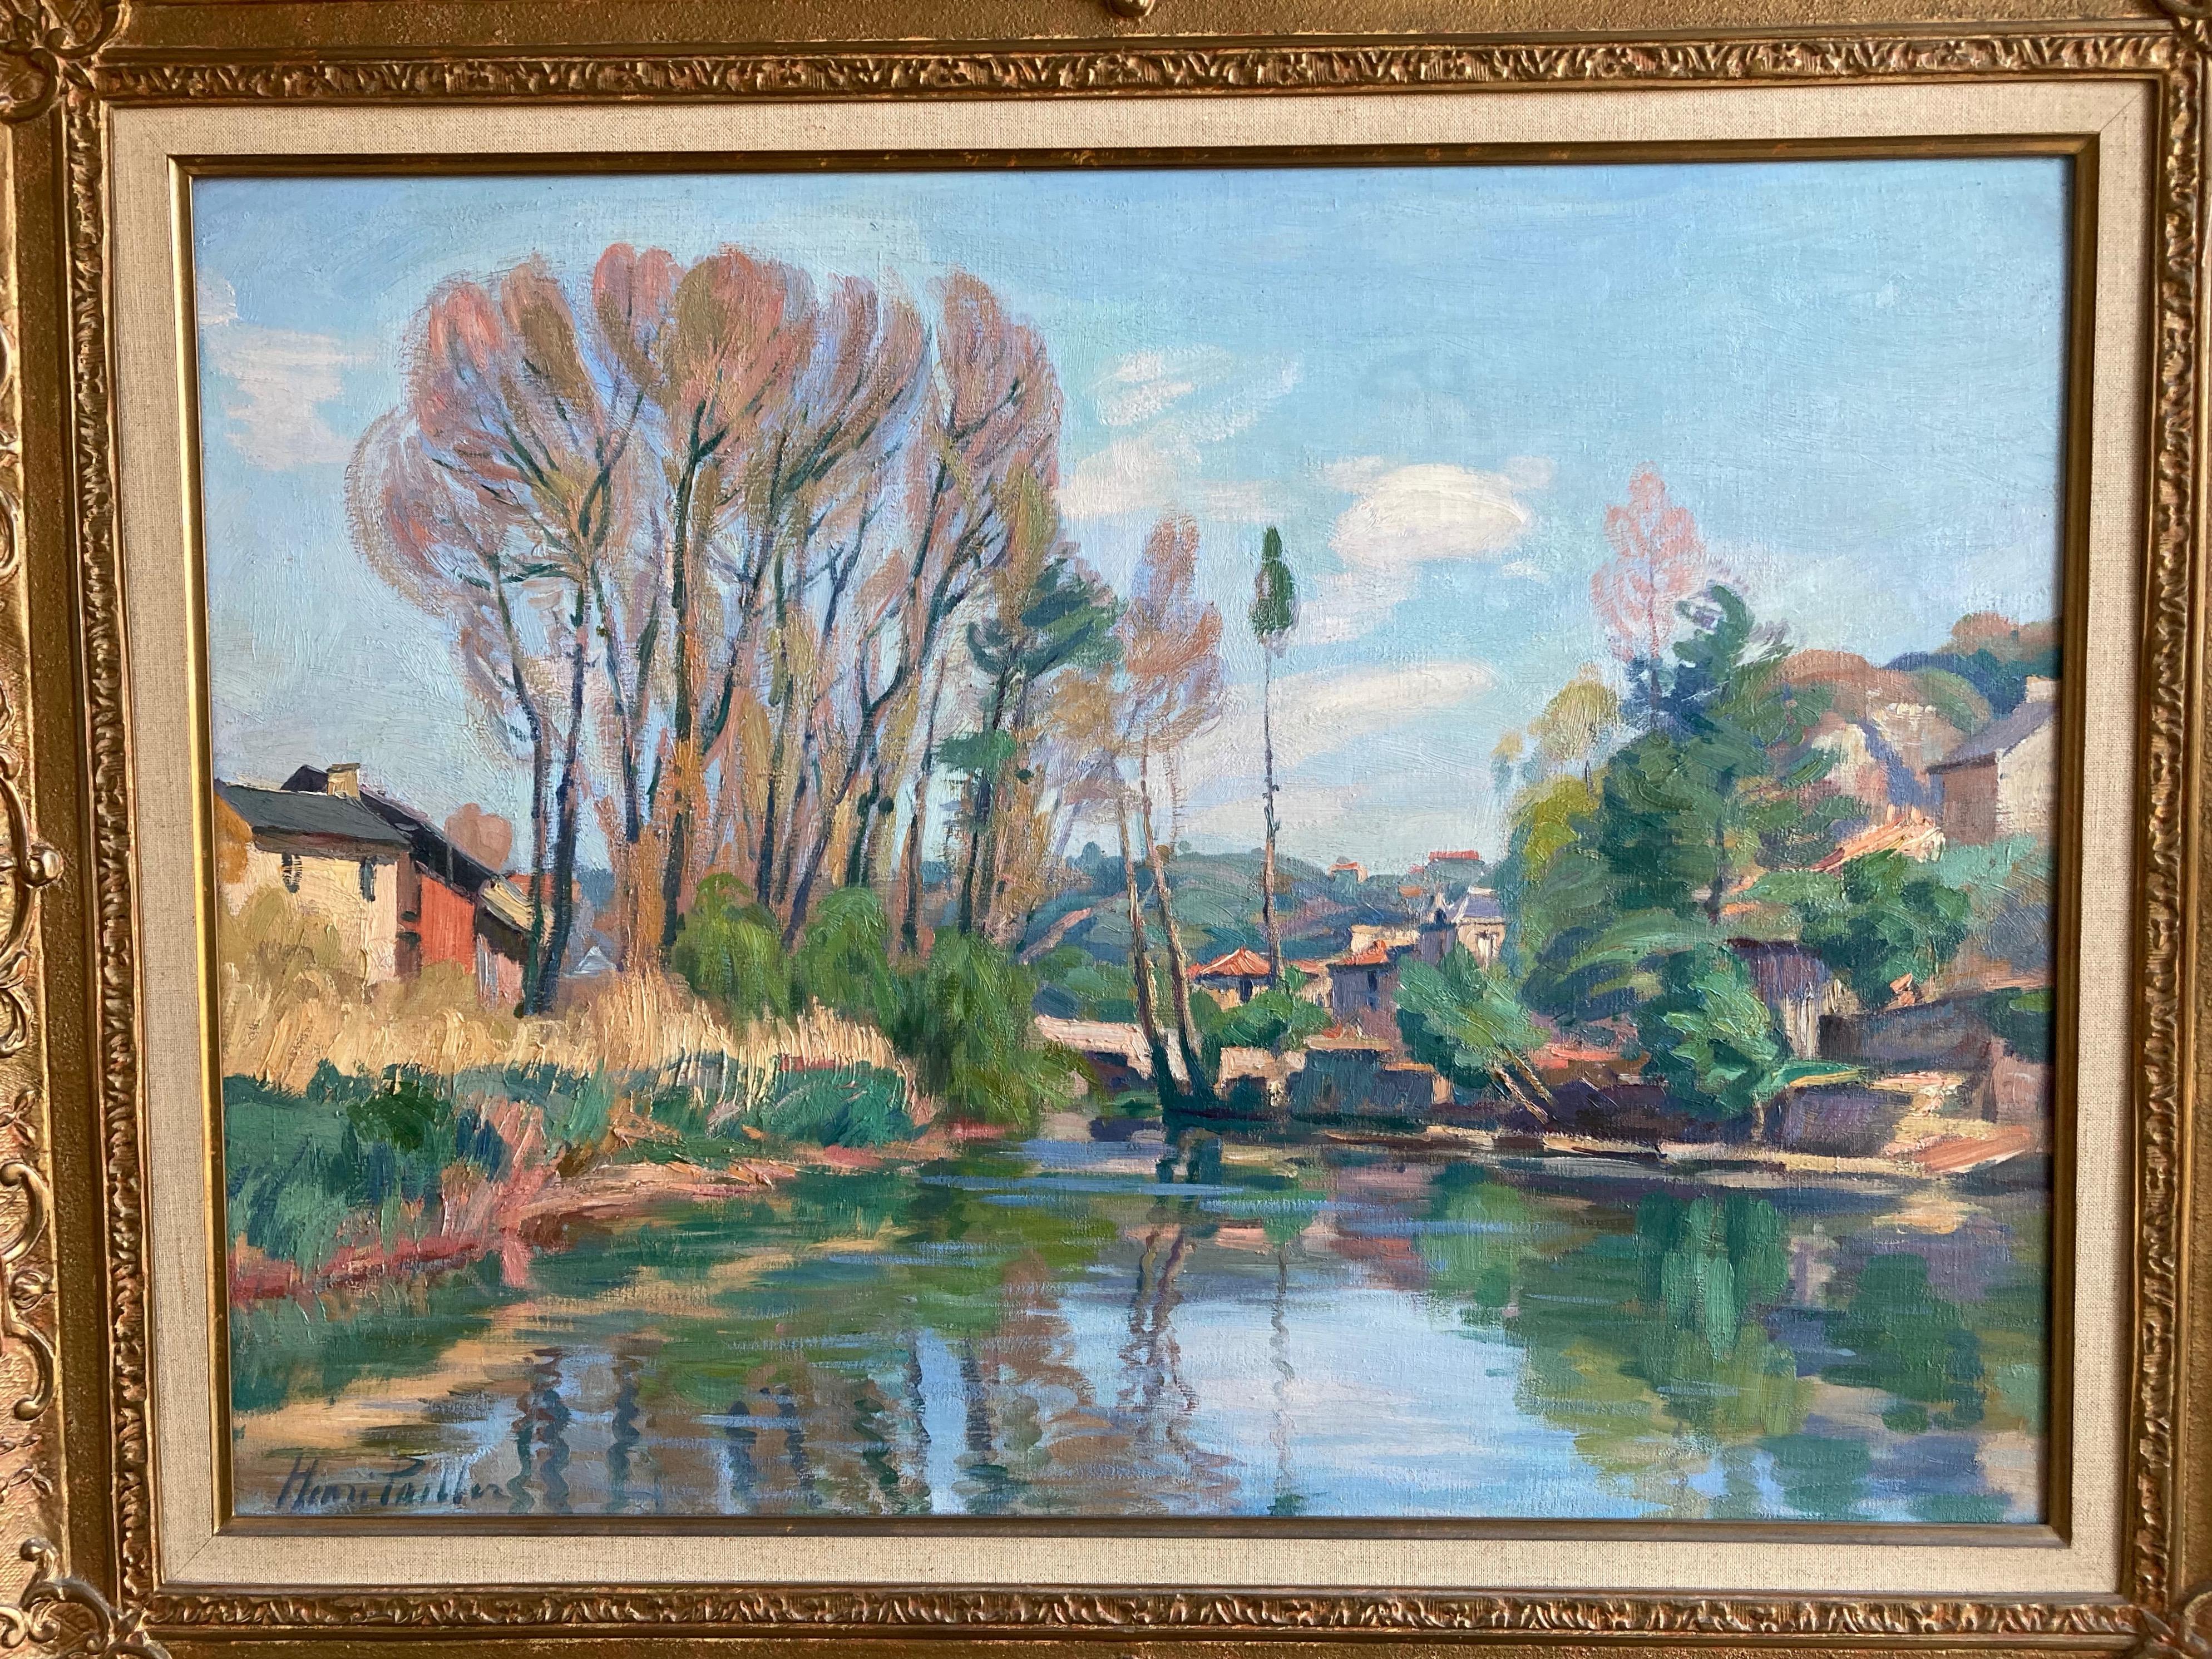  Henri Pailler, French Impressionist river landscape 1